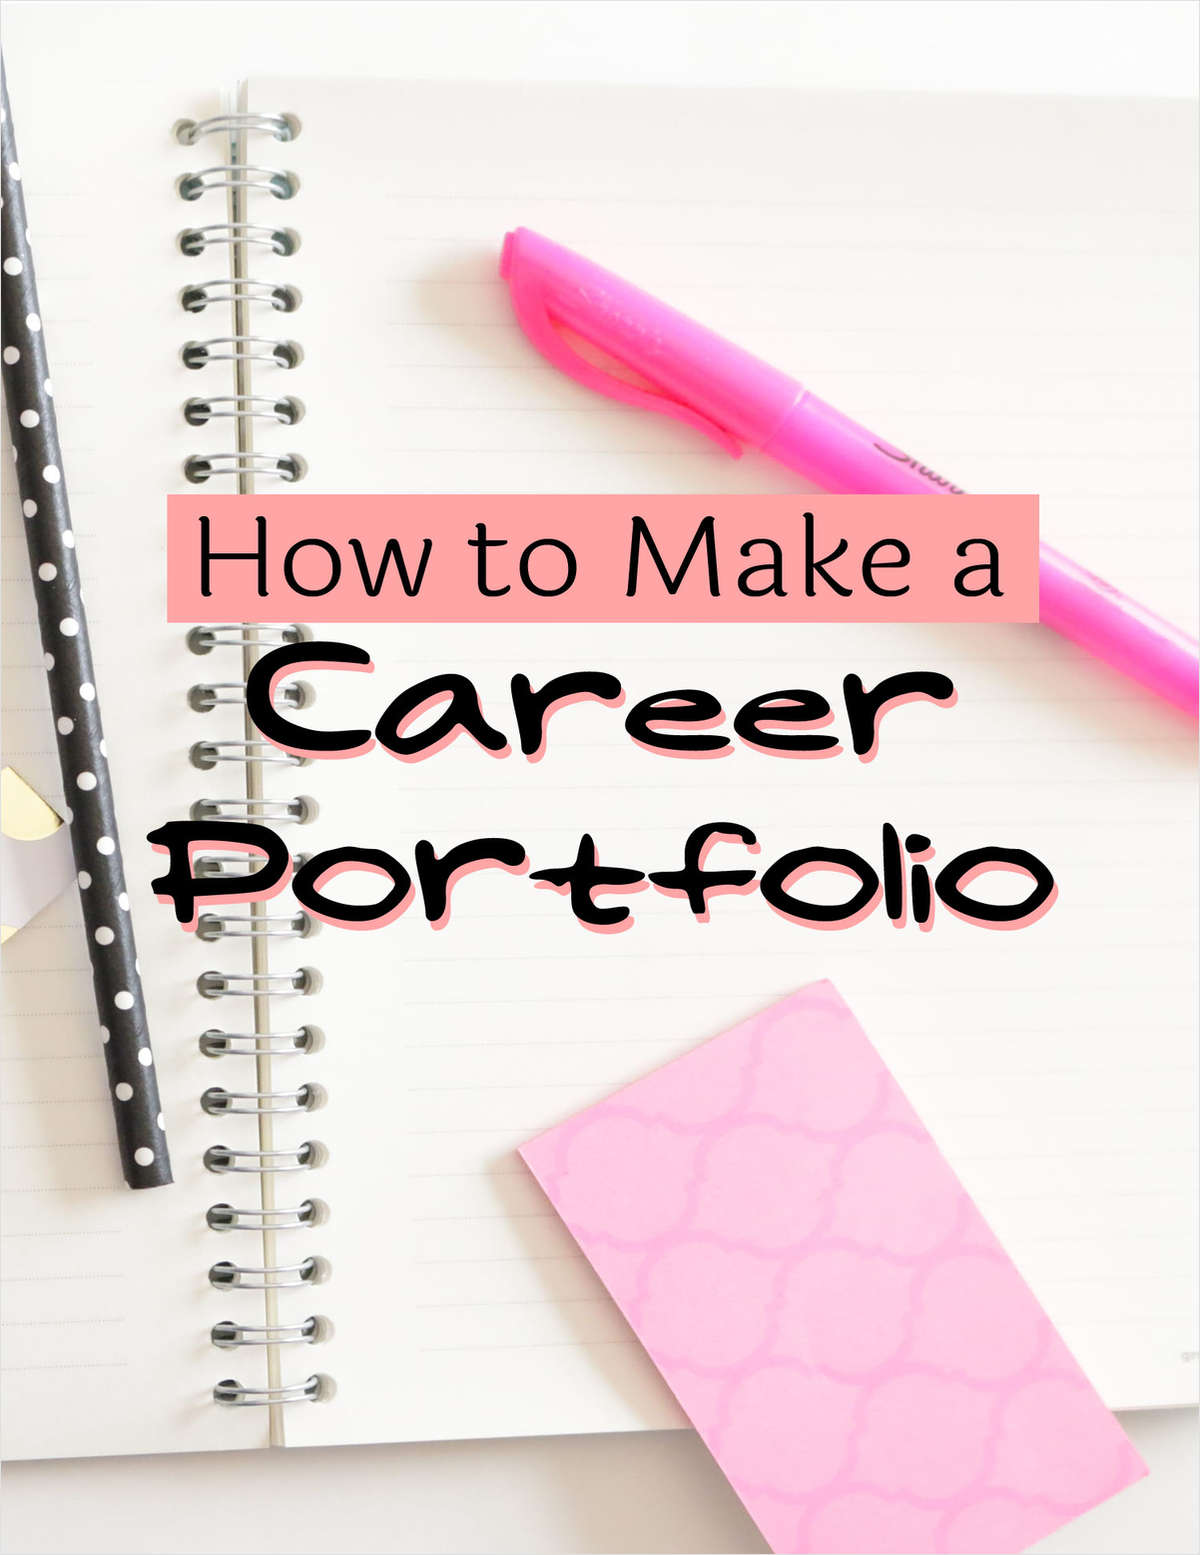 How to Make a Career Portfolio